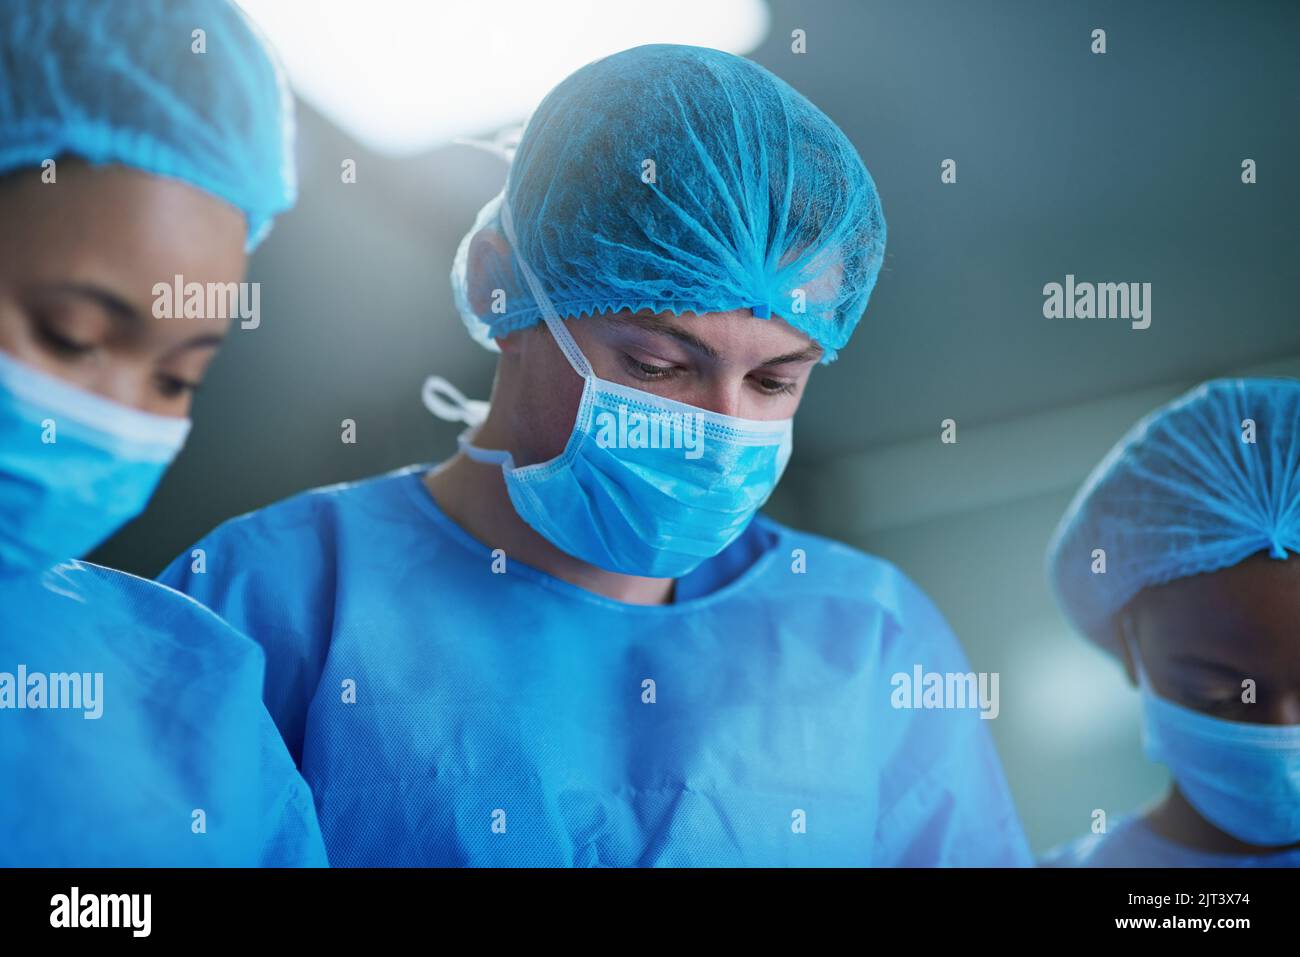 Une équipe de chirurgiens effectuant une intervention médicale dans une salle d'opération est cruciale pour la précision mentale et la concentration. Banque D'Images